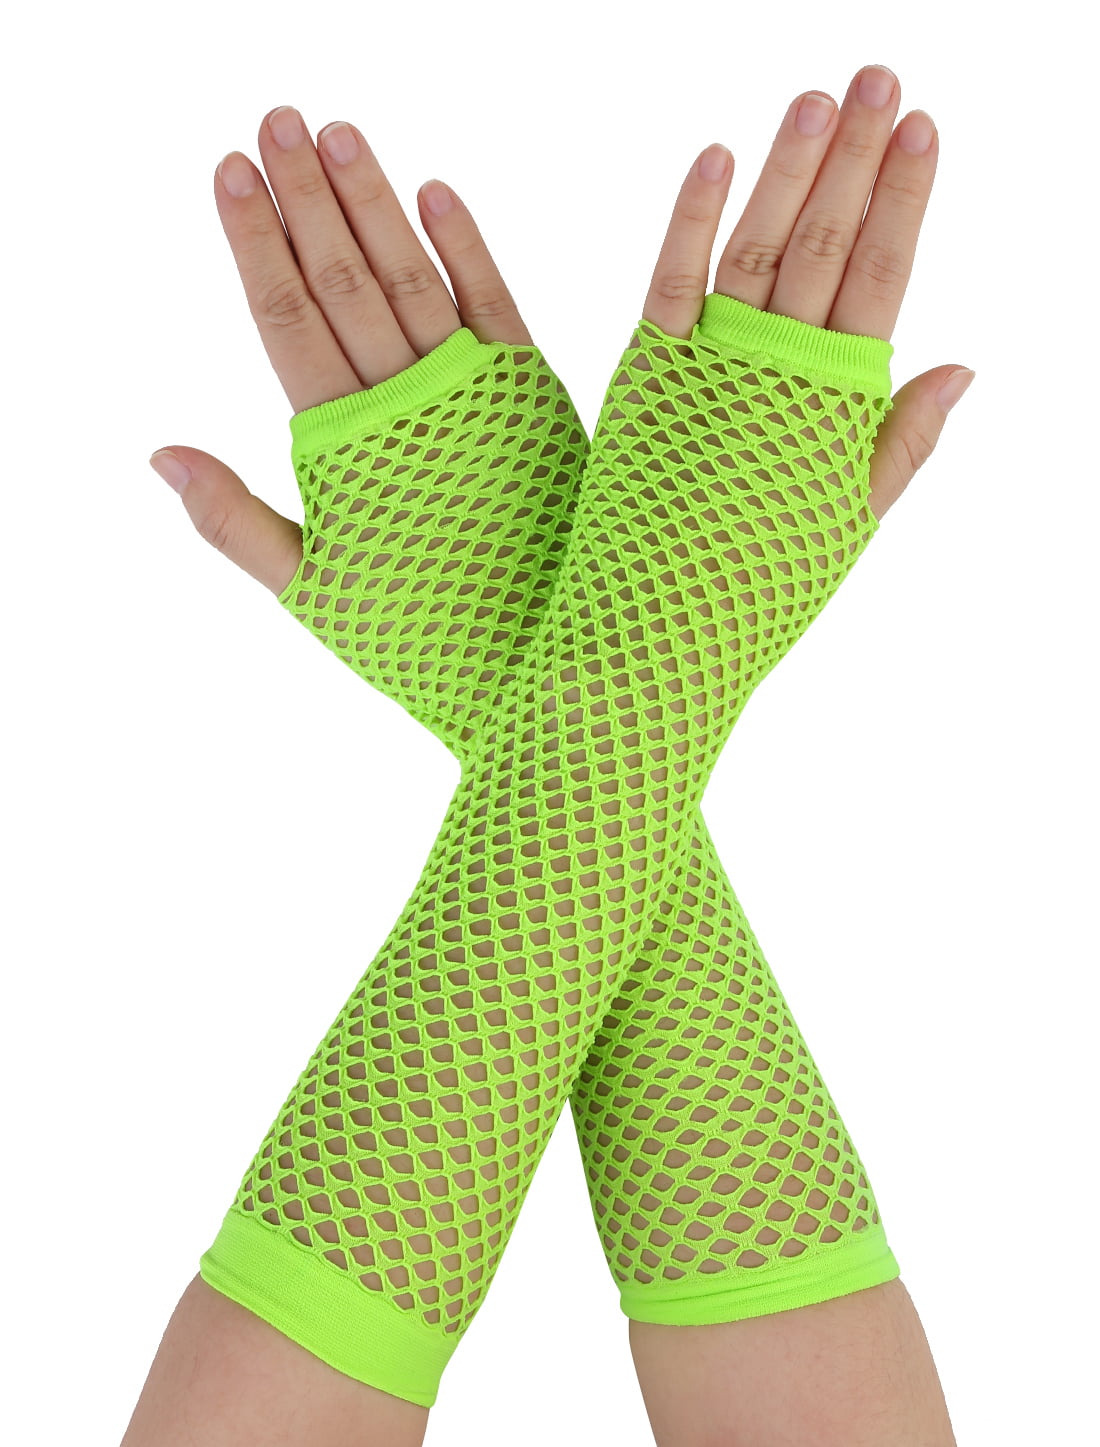 Party Gloves Ladies Long Fishnet Gloves Neon Fishnet Gloves Fingerless Gloves 